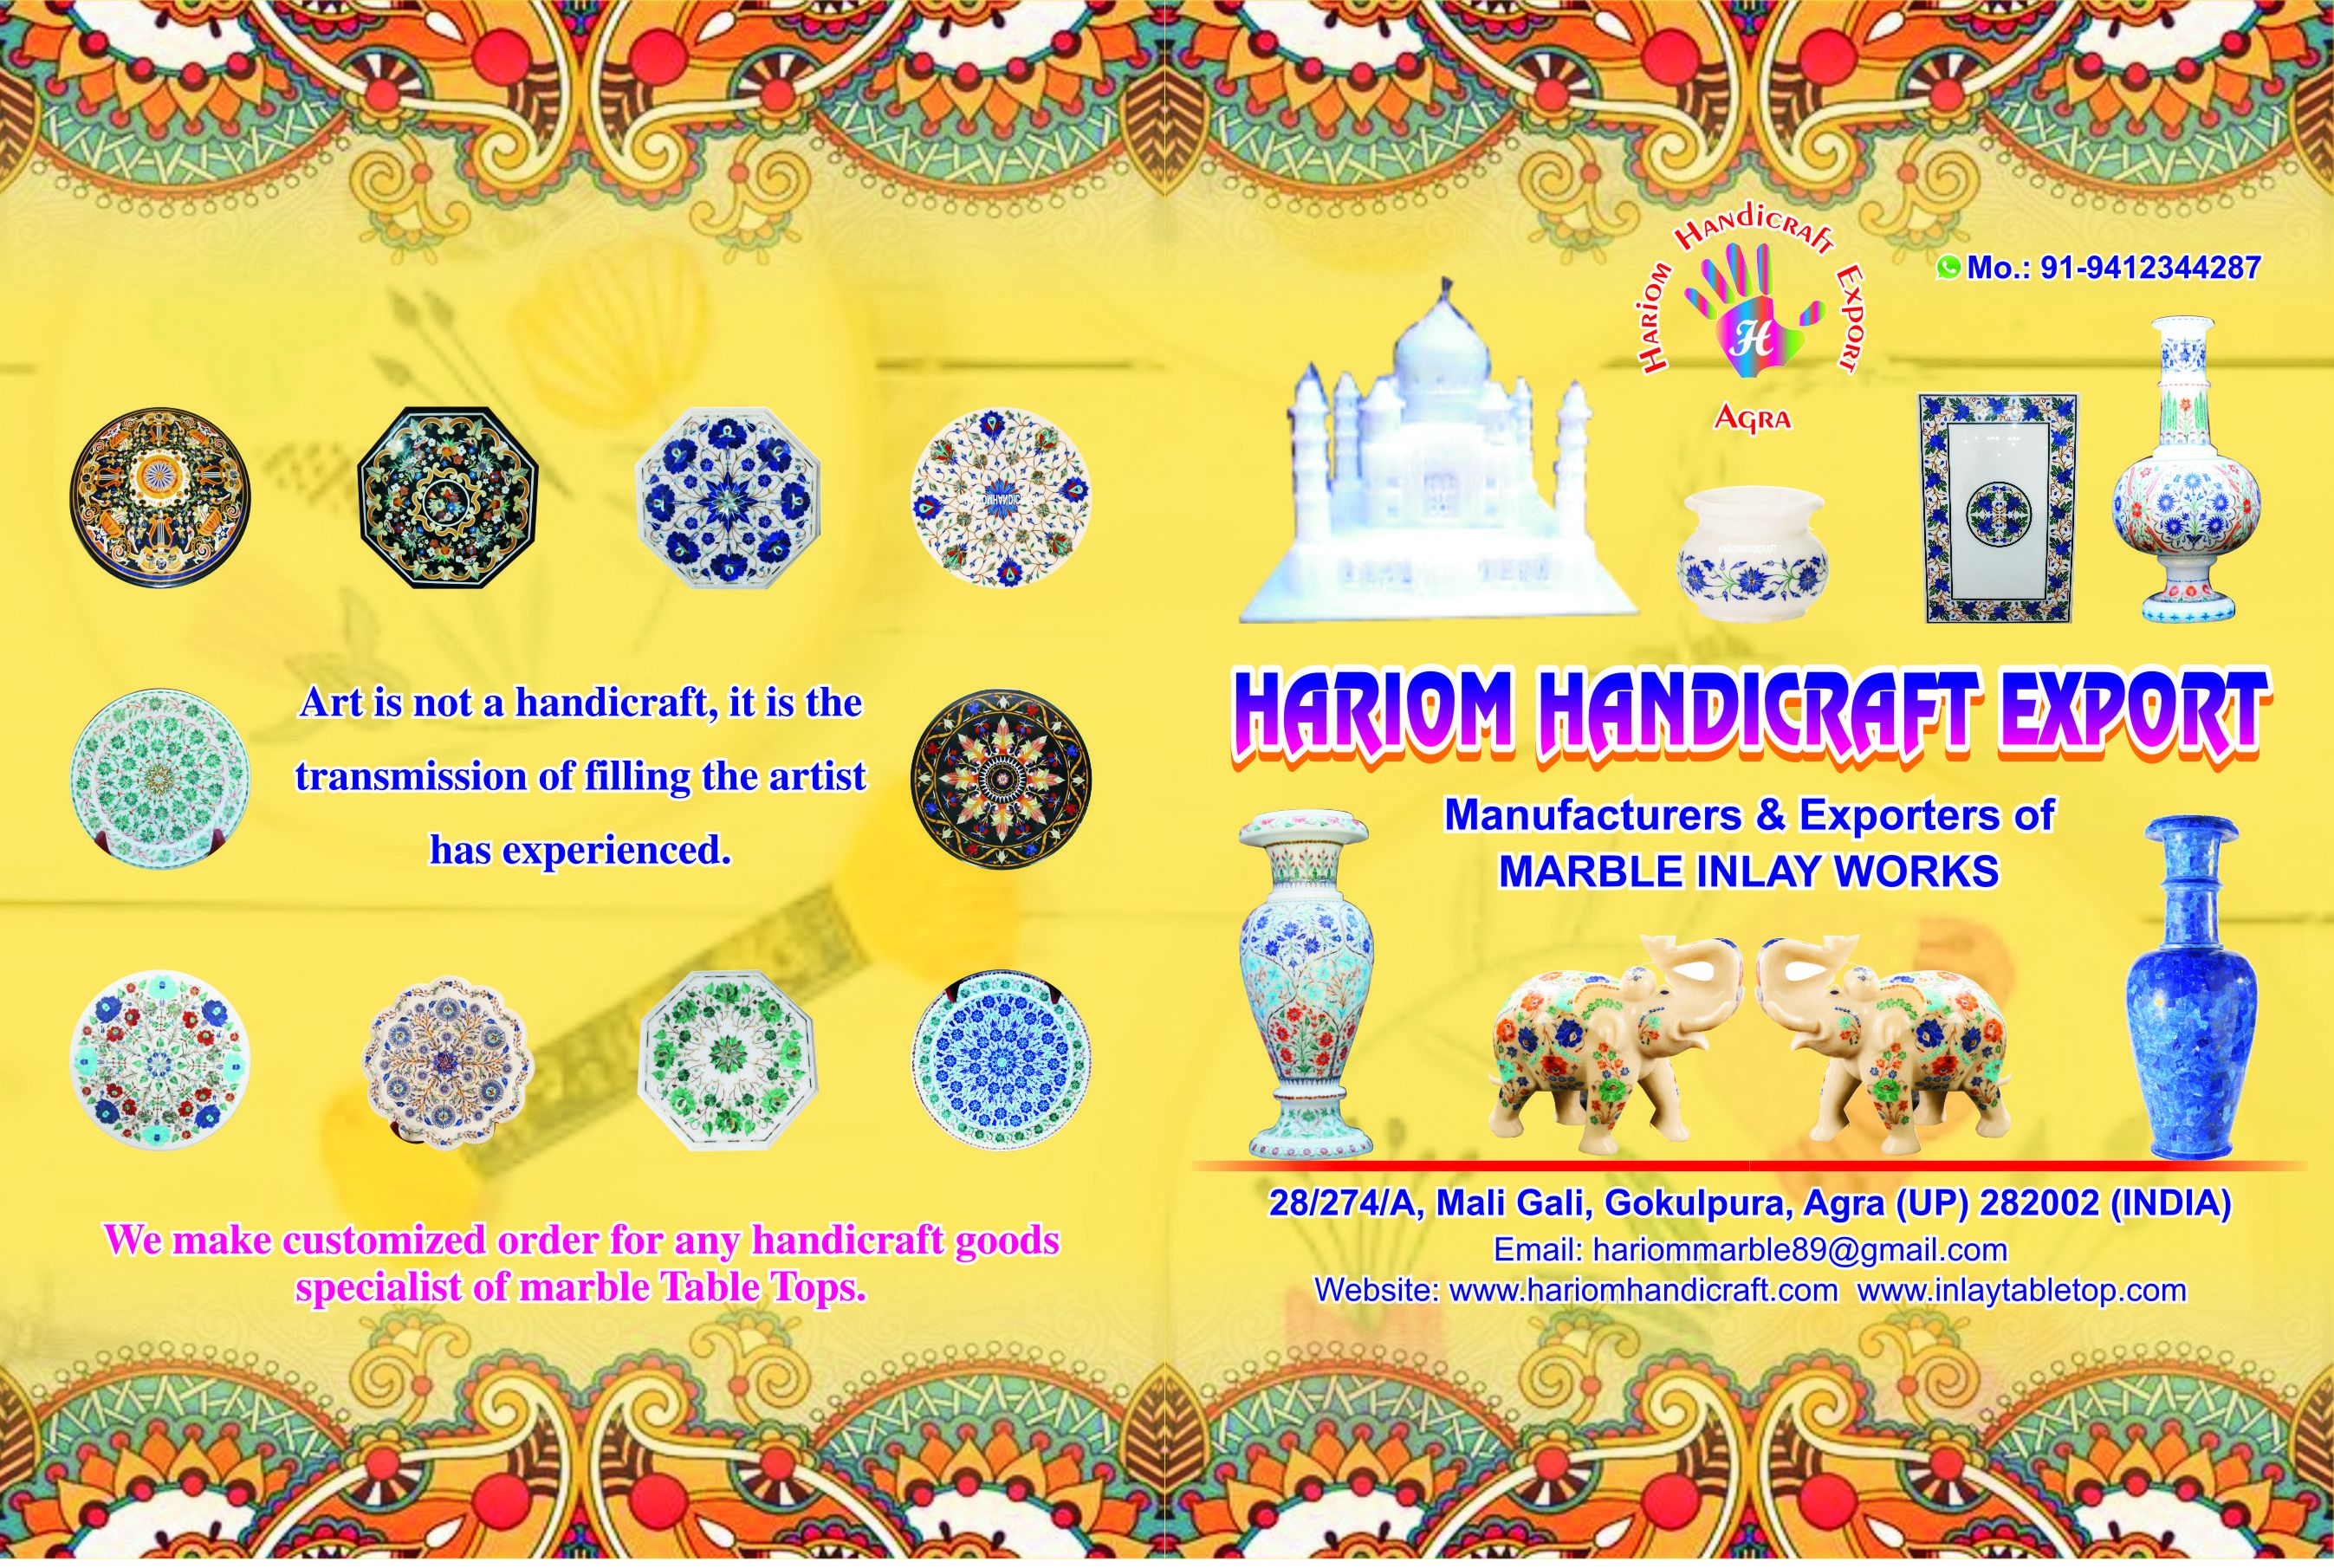 Hariom Handicraft Export